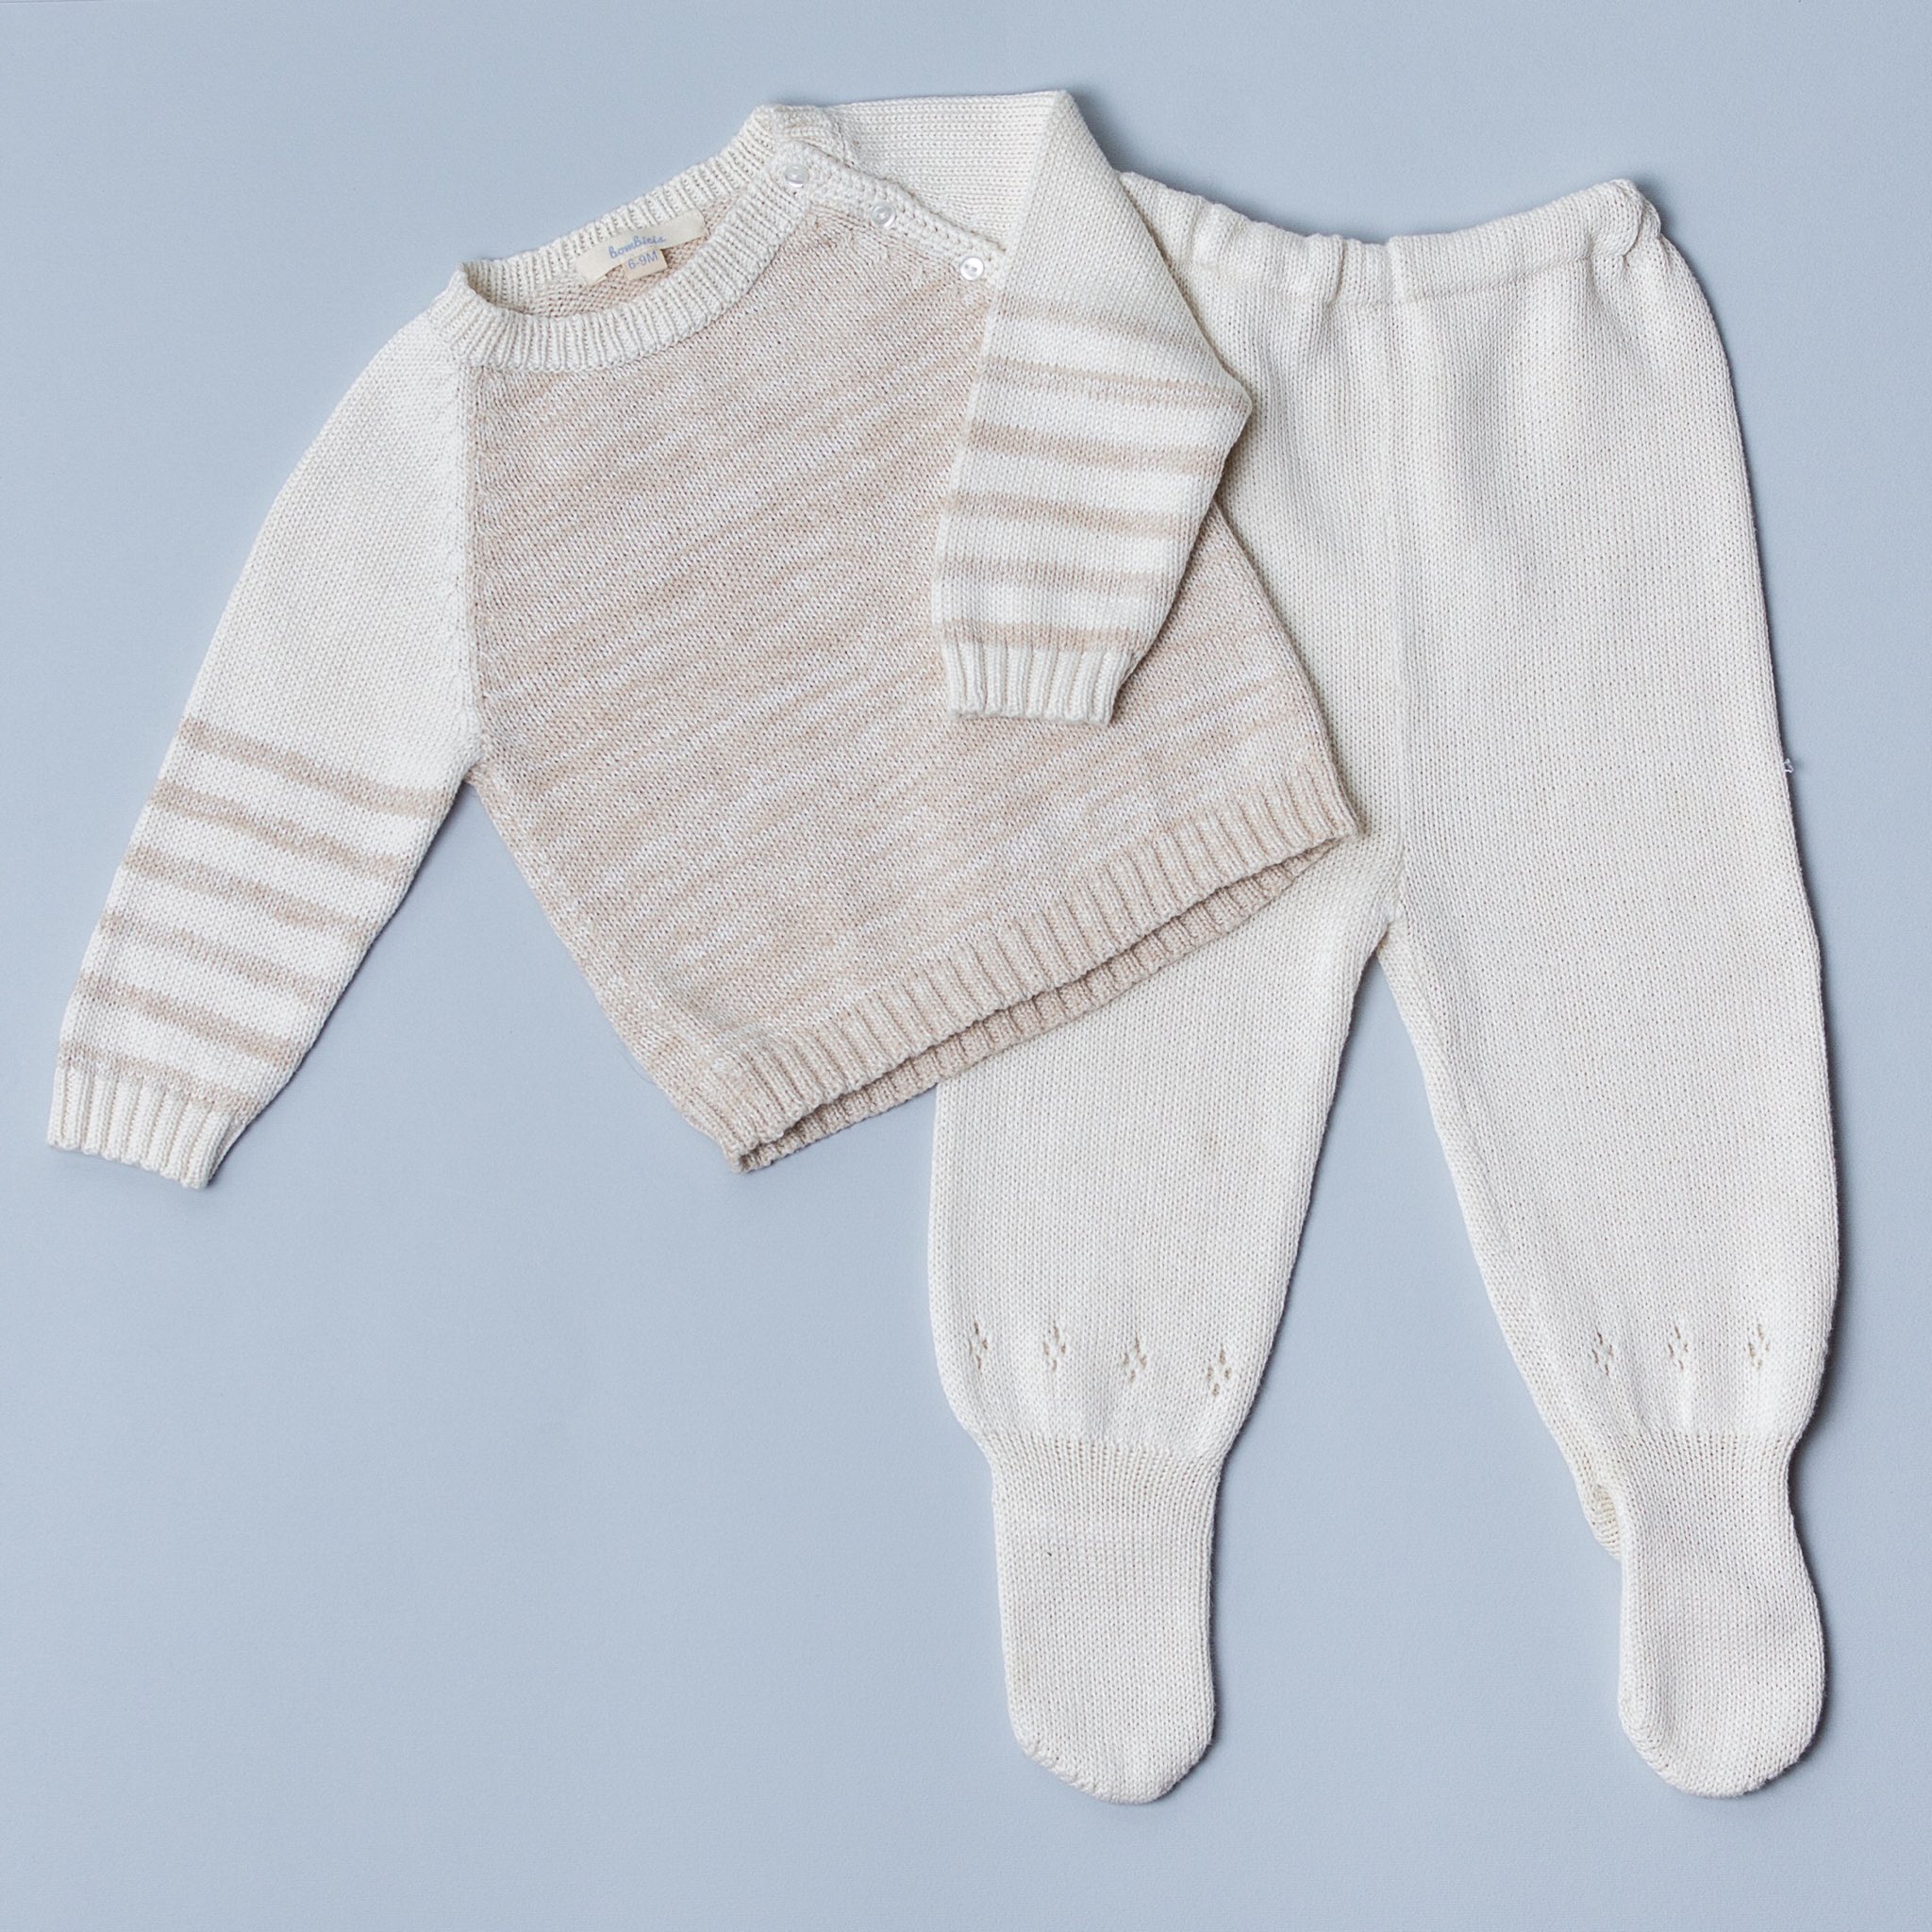 Bombicis ropa para bebé del mejor algodón orgánico 